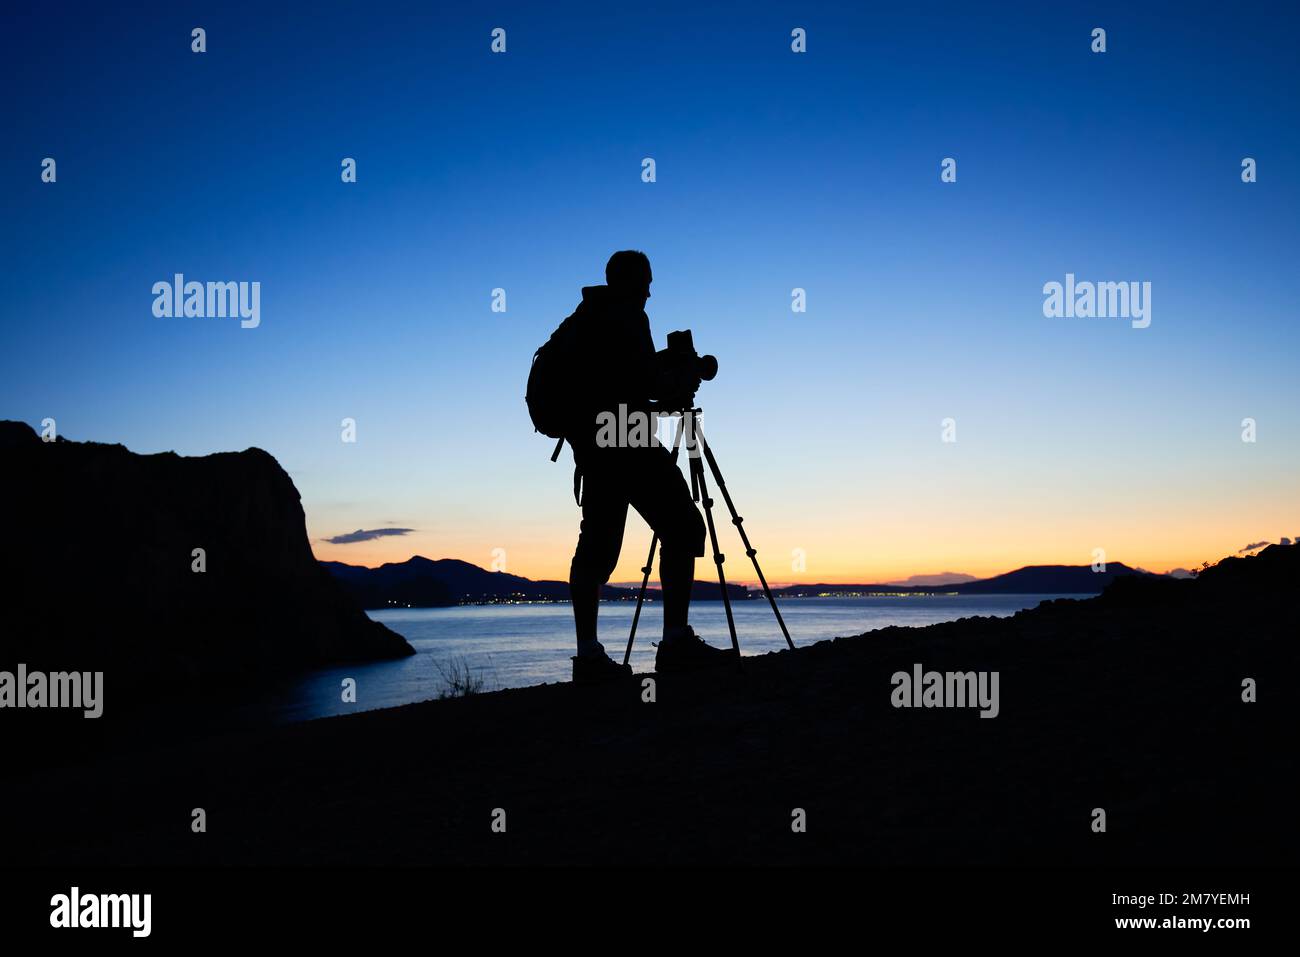 Silhouette de photographe au sommet de la montagne, sur fond de coucher de soleil. Photographe de la nature en action. Filmer la photographie analogique Banque D'Images